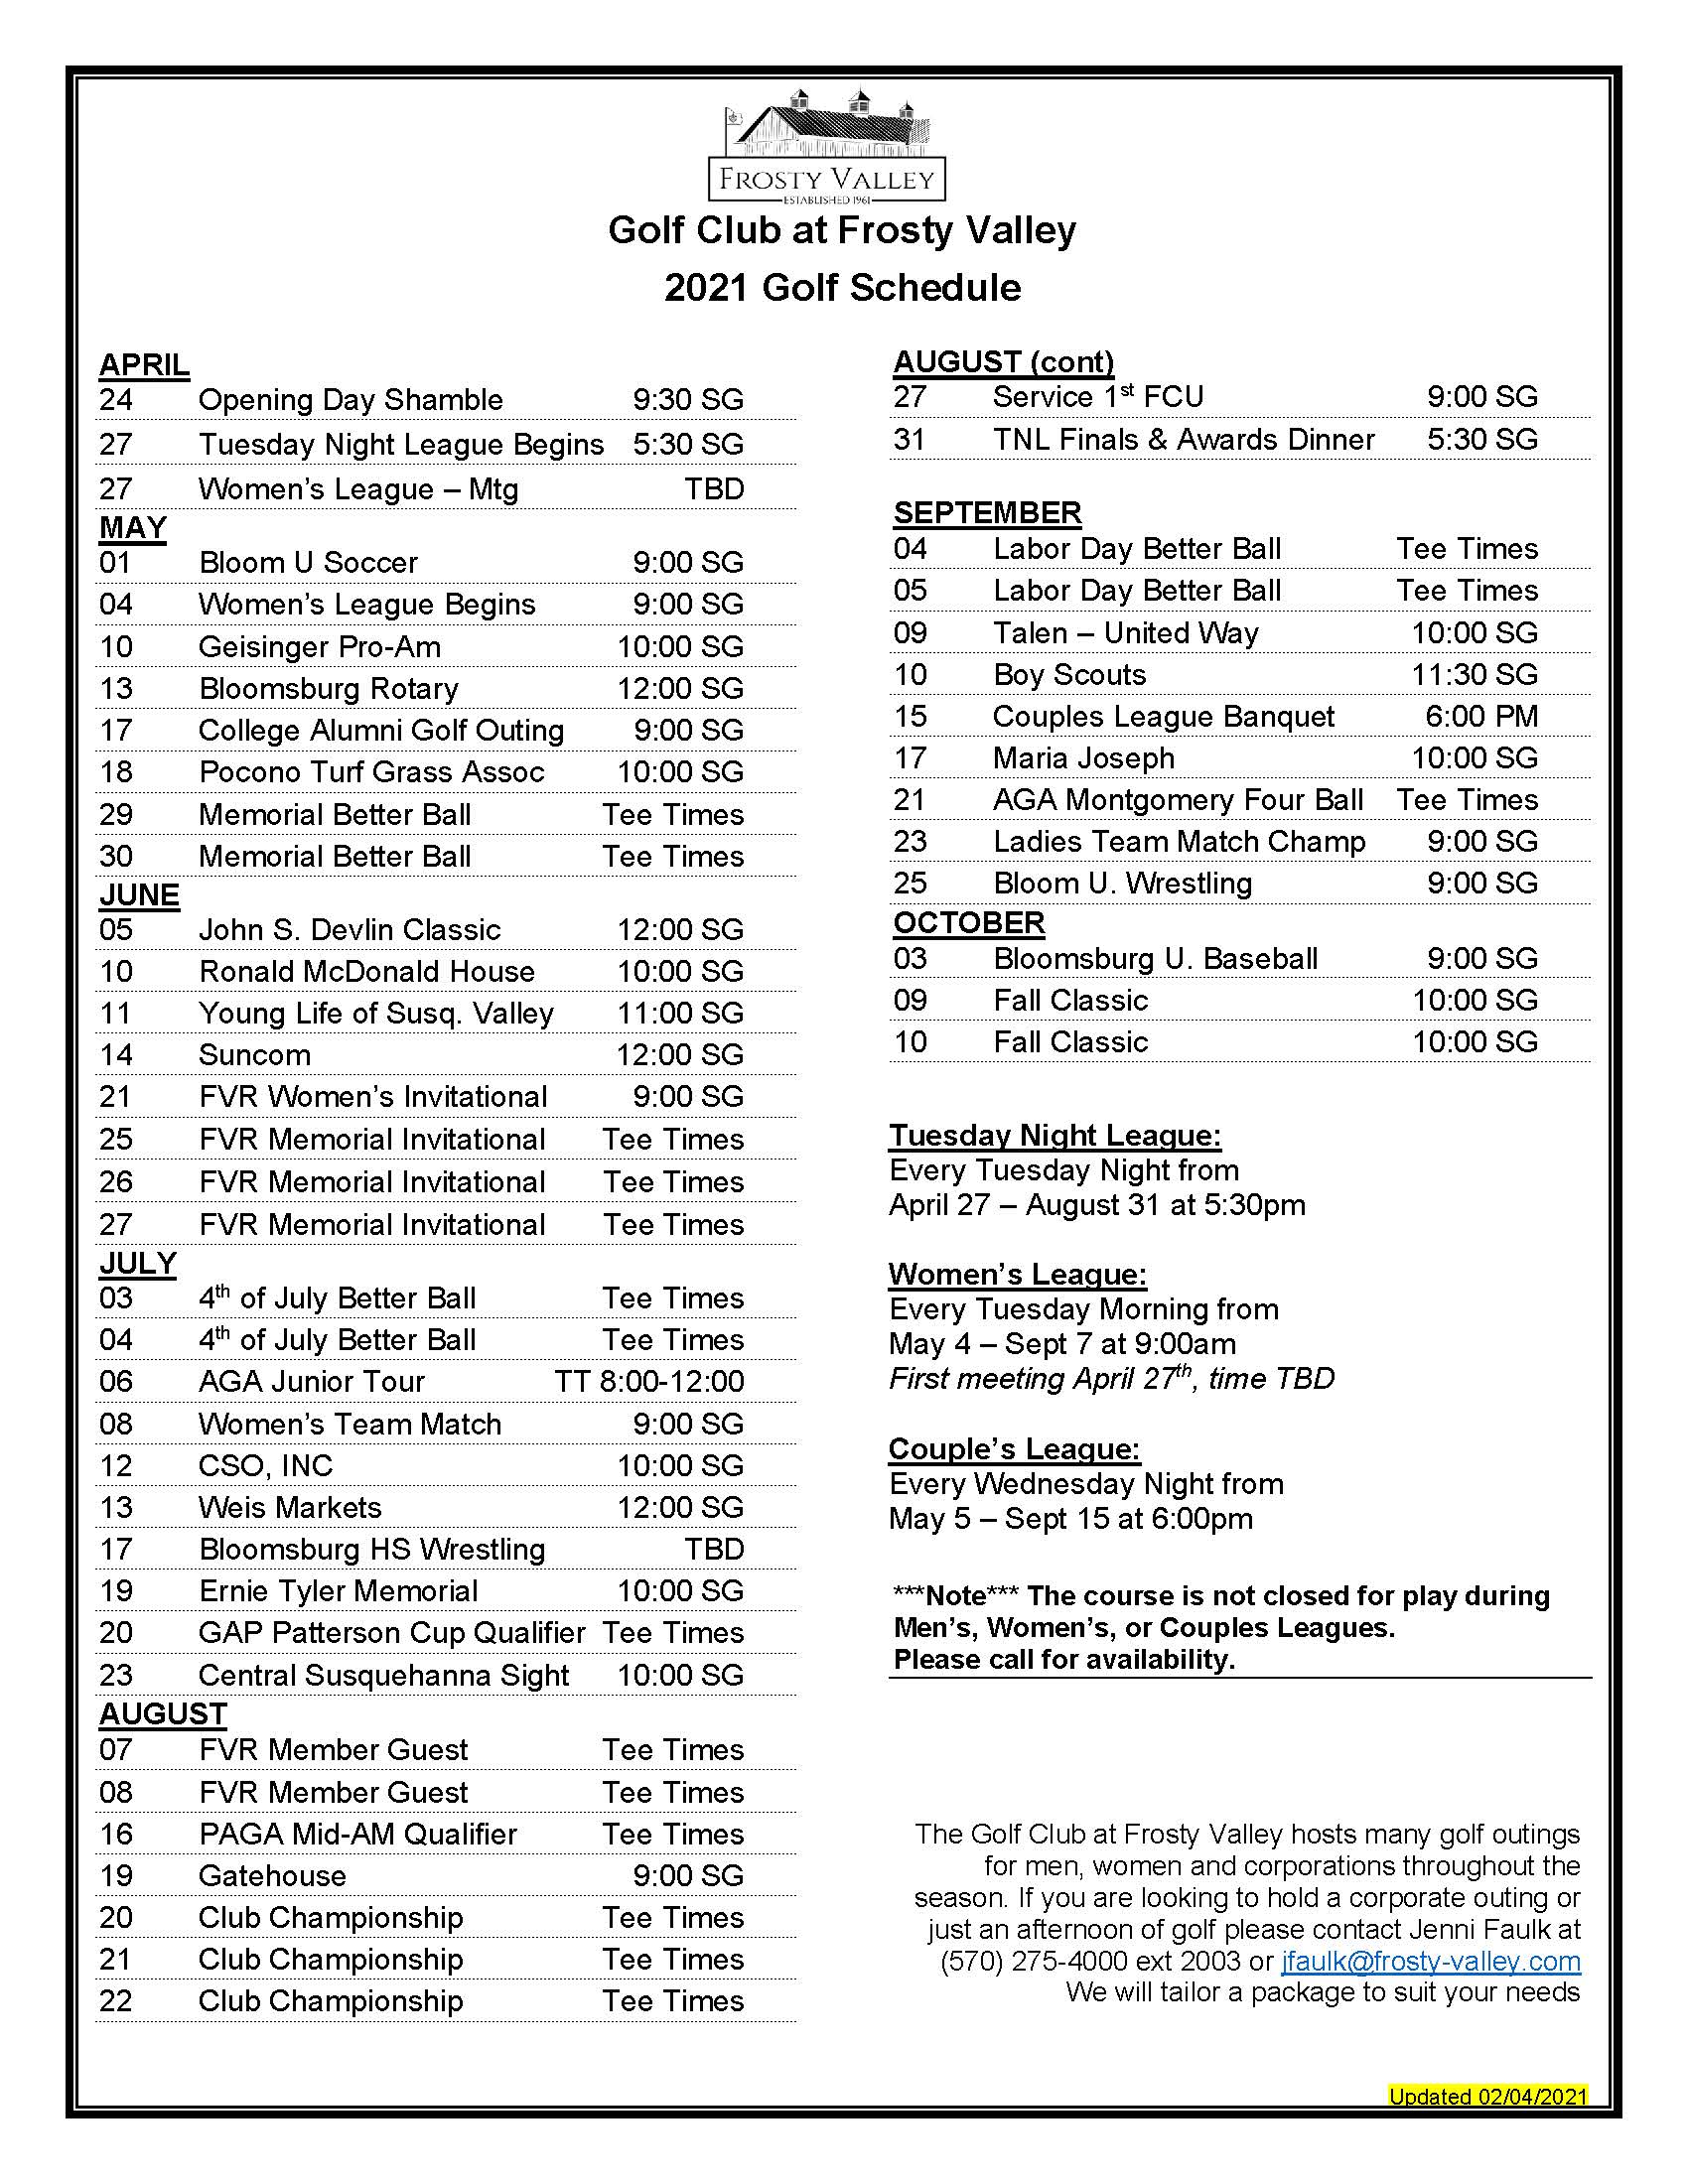 Golf Tournament Schedule - Frosty Valley